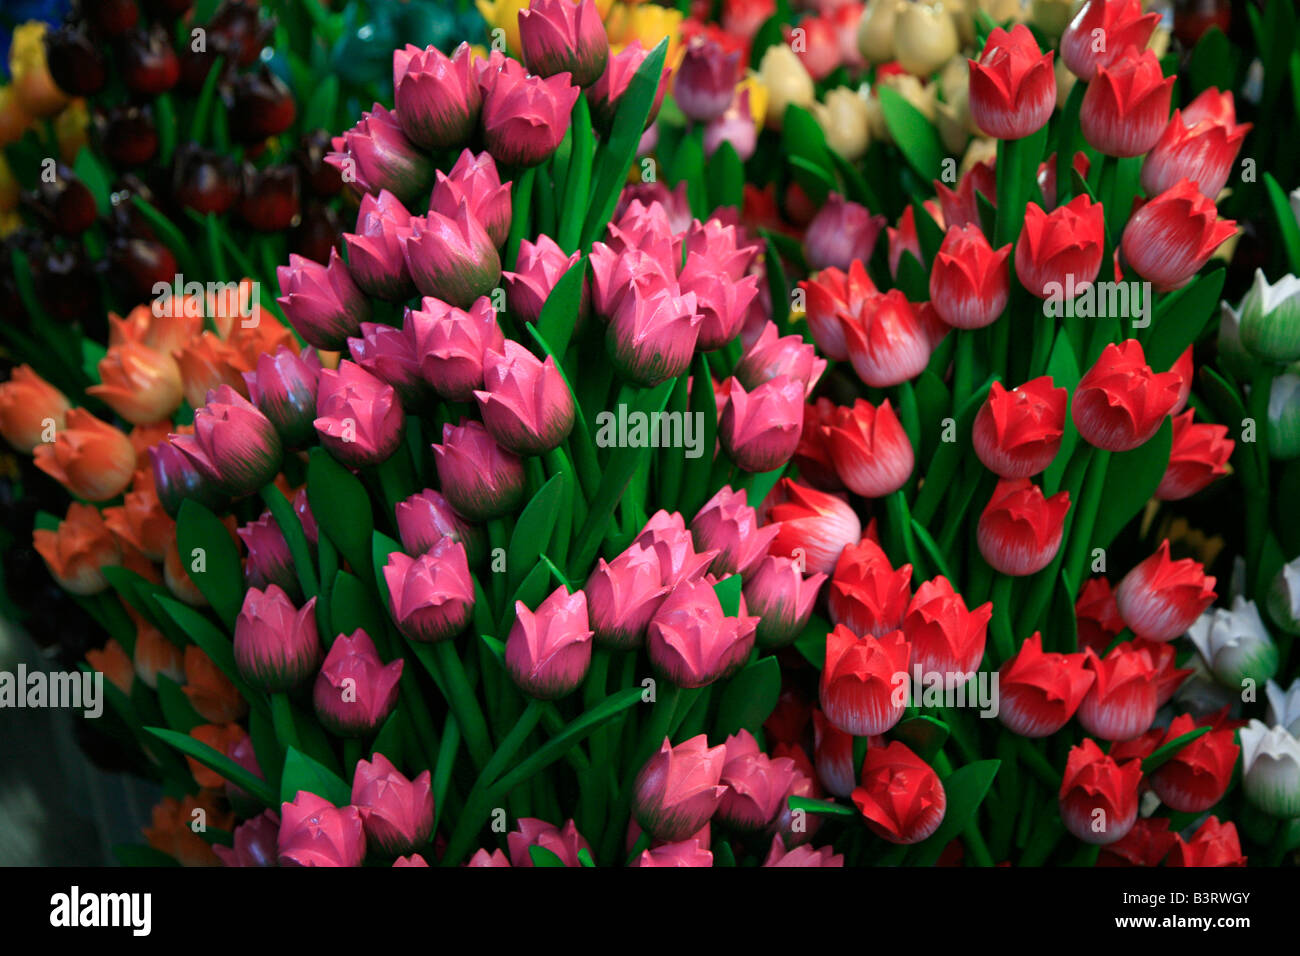 Scolpito in legno multicolore di tulipani al mercato dei fiori di Amsterdam, in Olanda. Perfetto souvenir olandesi. Foto Stock